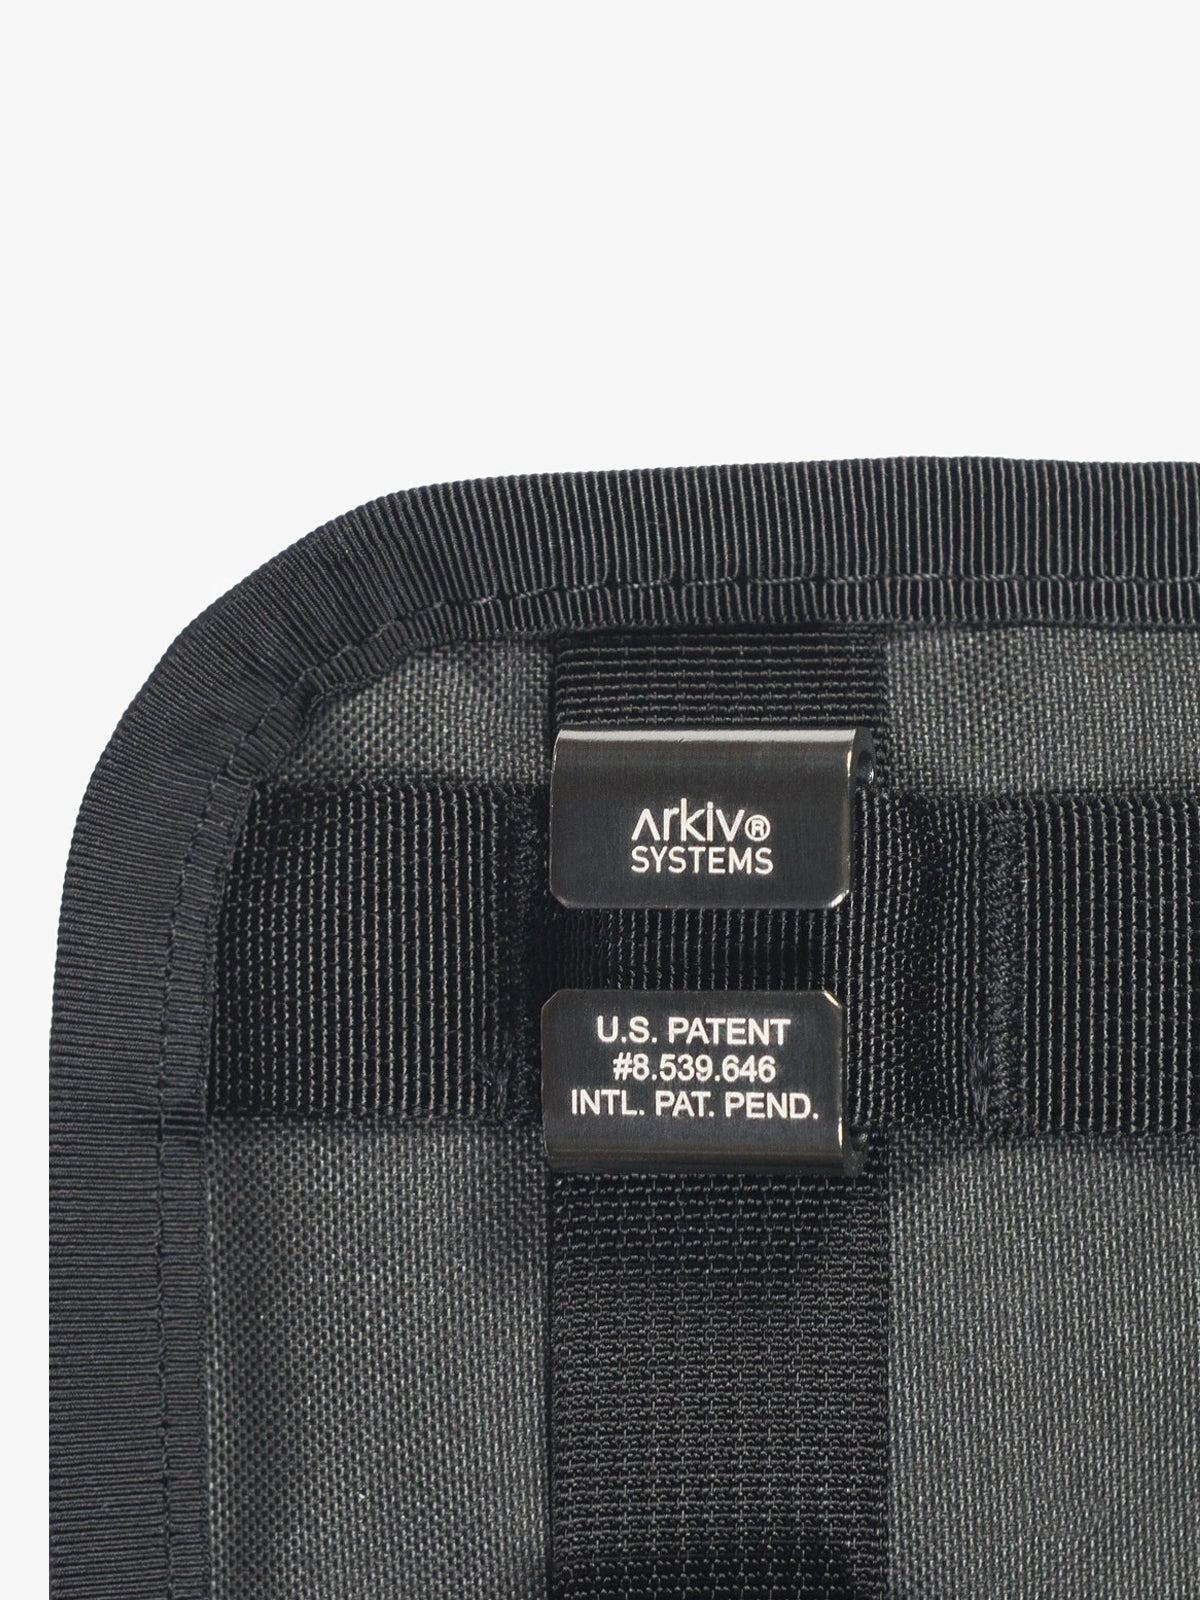 Arkiv Vertical Zippered Pocket by Mission Workshop - Weerbestendige tassen & technische kleding - San Francisco & Los Angeles - Gemaakt om te doorstaan - Voor altijd gegarandeerd